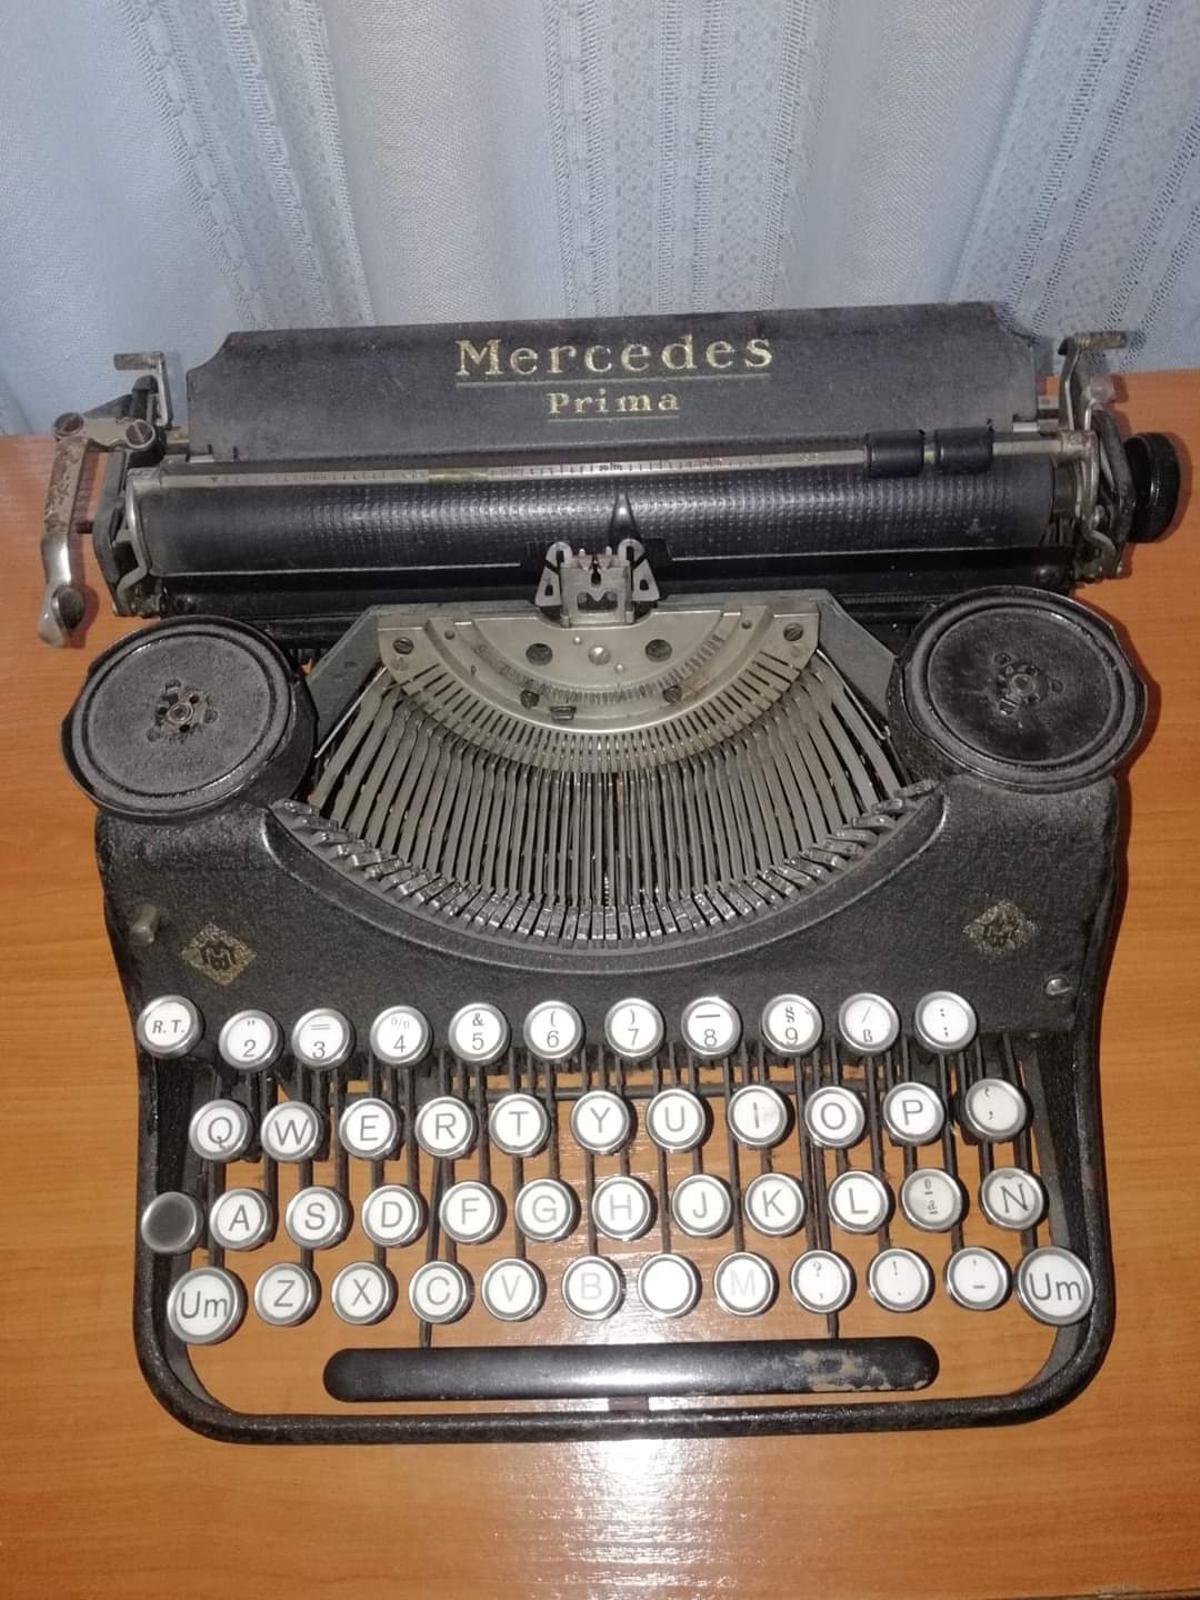 Maquina de escribir de la 109 BM Mercedes Prima